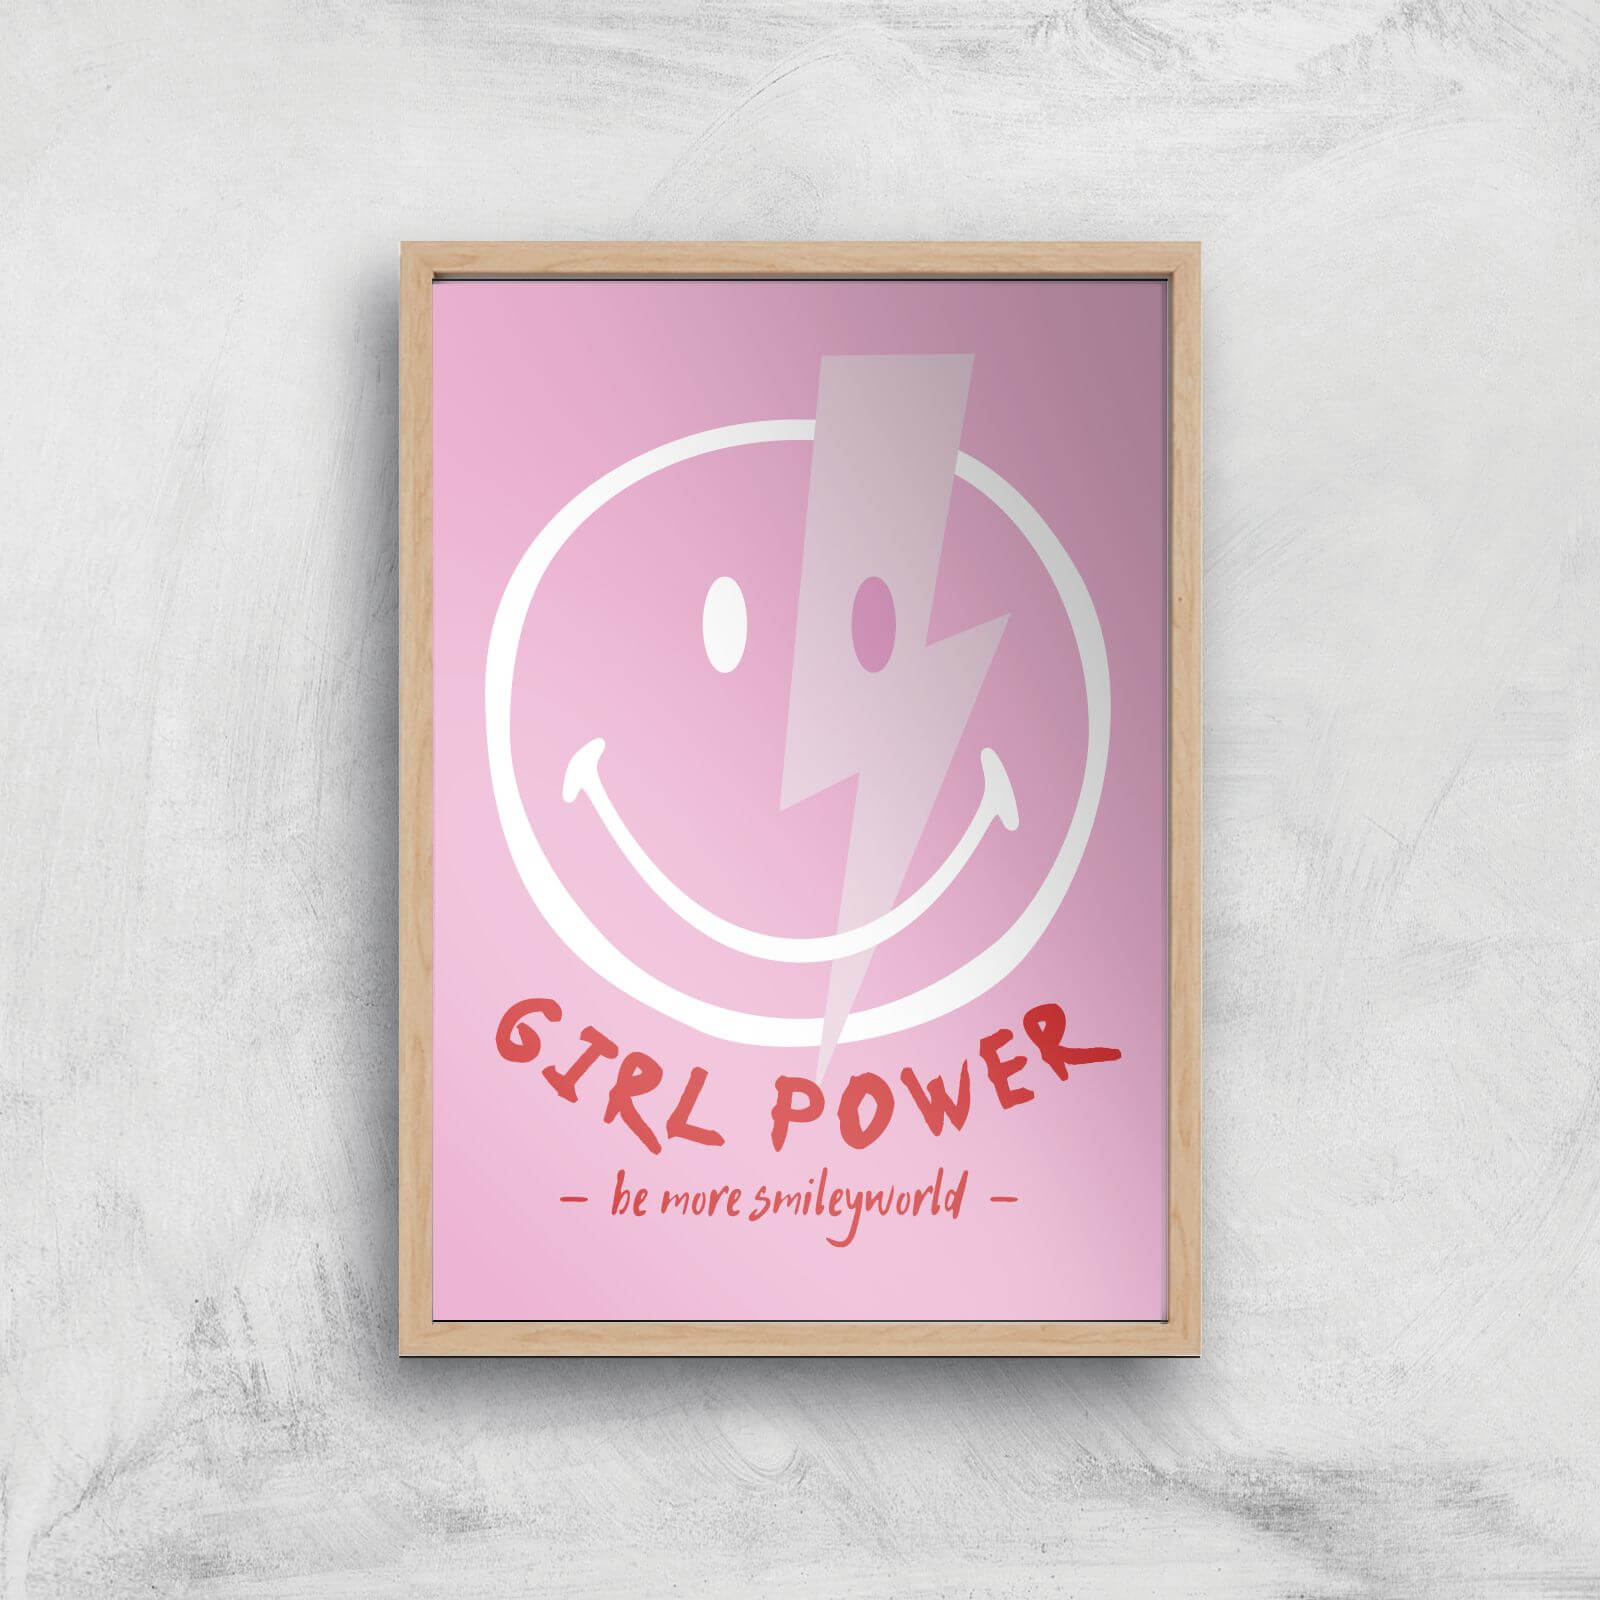 Girl Power Giclée Art Print - A2 - Wooden Frame